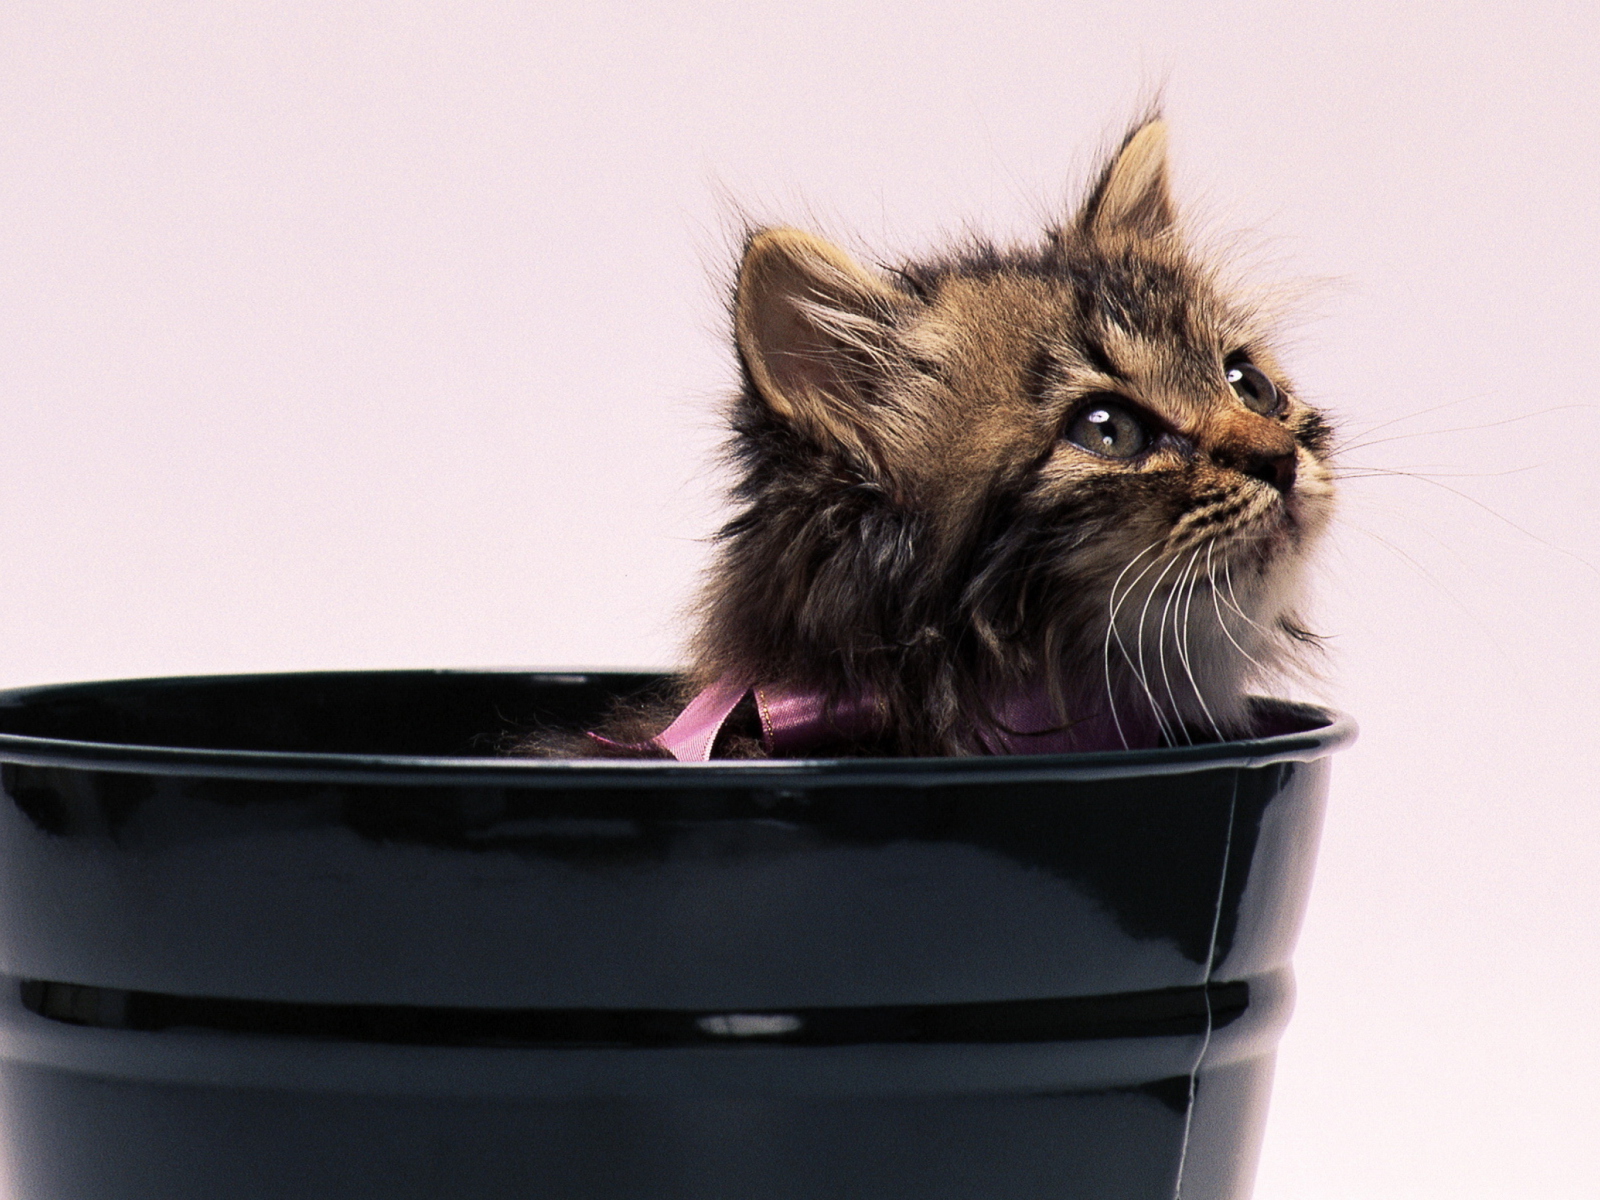 Sweet Kitten In Bucket wallpaper 1600x1200